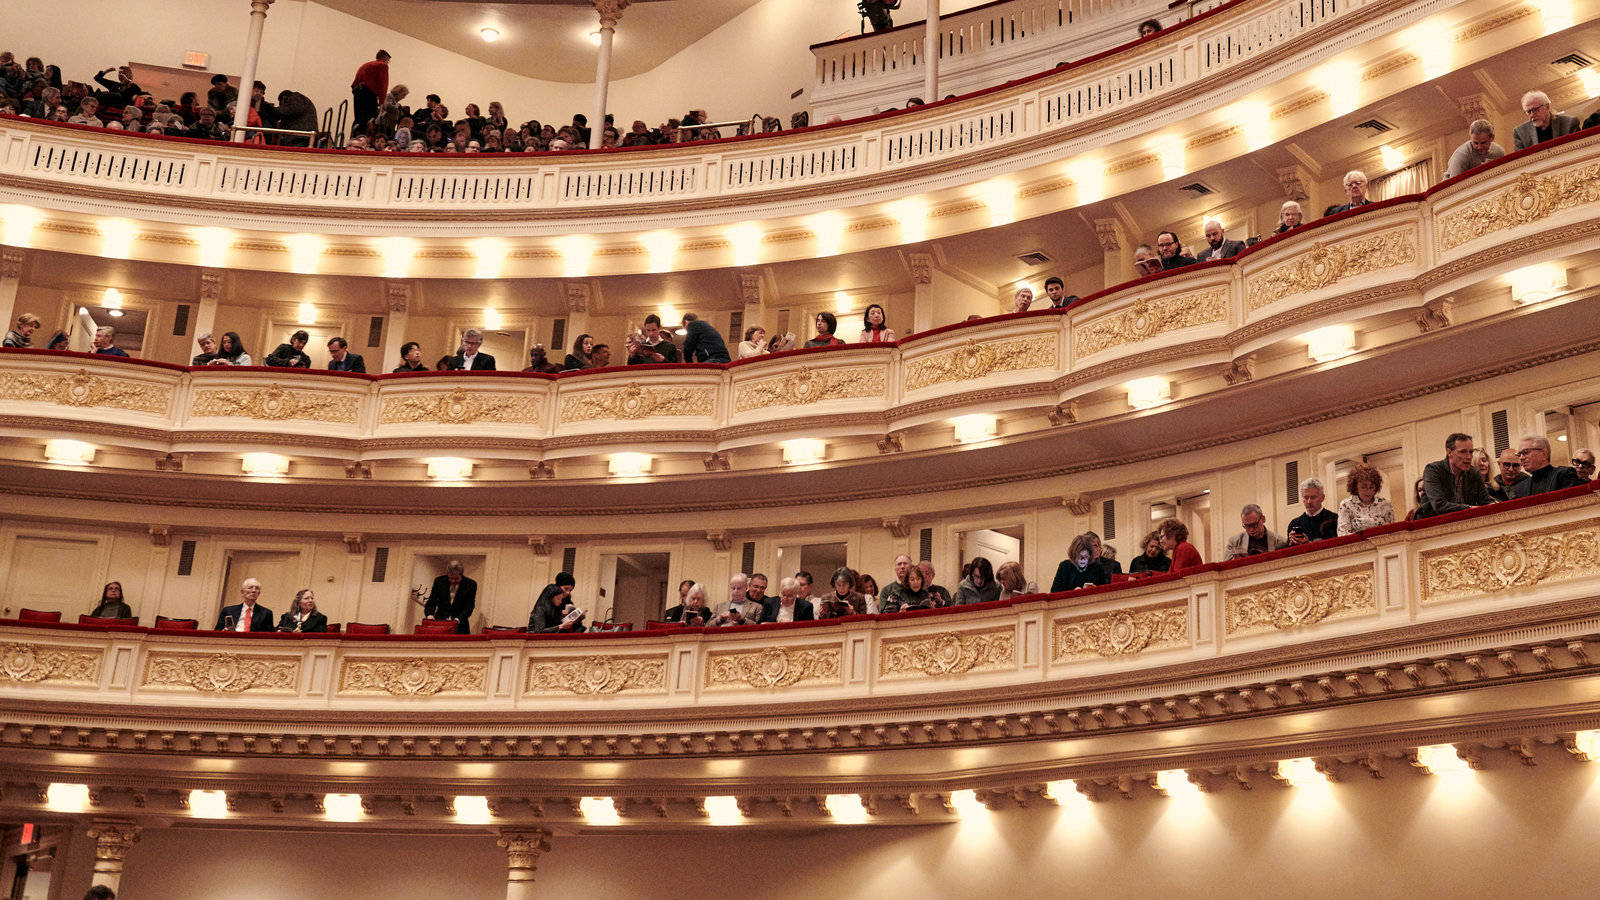 Audienciadentro Del Carnegie Hall Fondo de pantalla